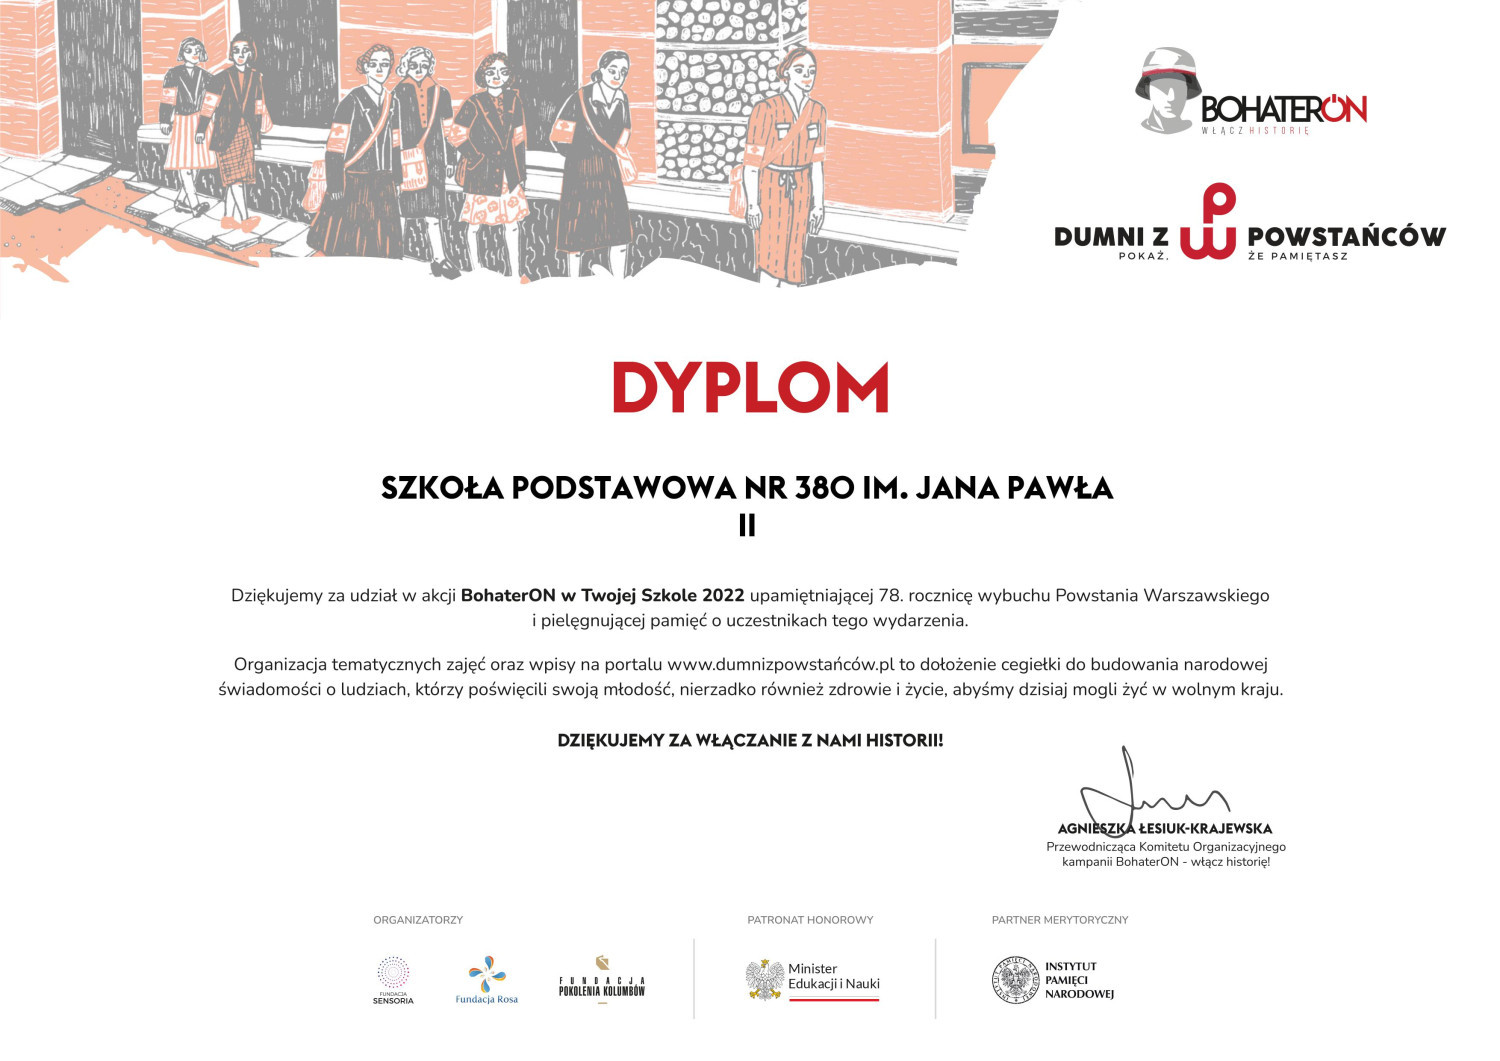 Dyplom za udział w akcji Bohateron 2022